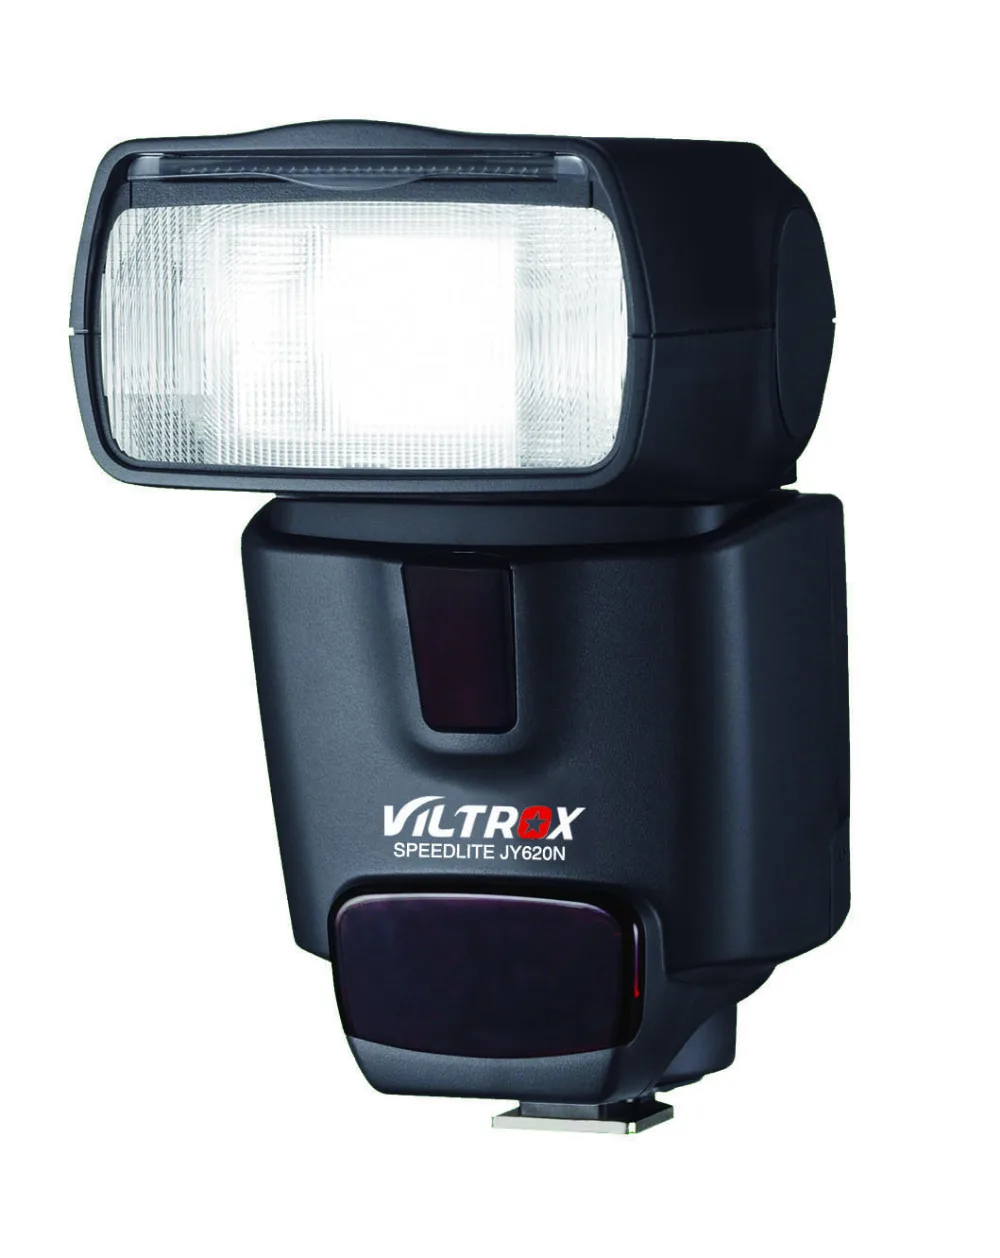 Viltrox JY-620N Camera LCD TTL Flash Speedlite for Nikon D3100 D3200 D5100 D5200 D5300 D7000 D800 D810 D90 DSLR